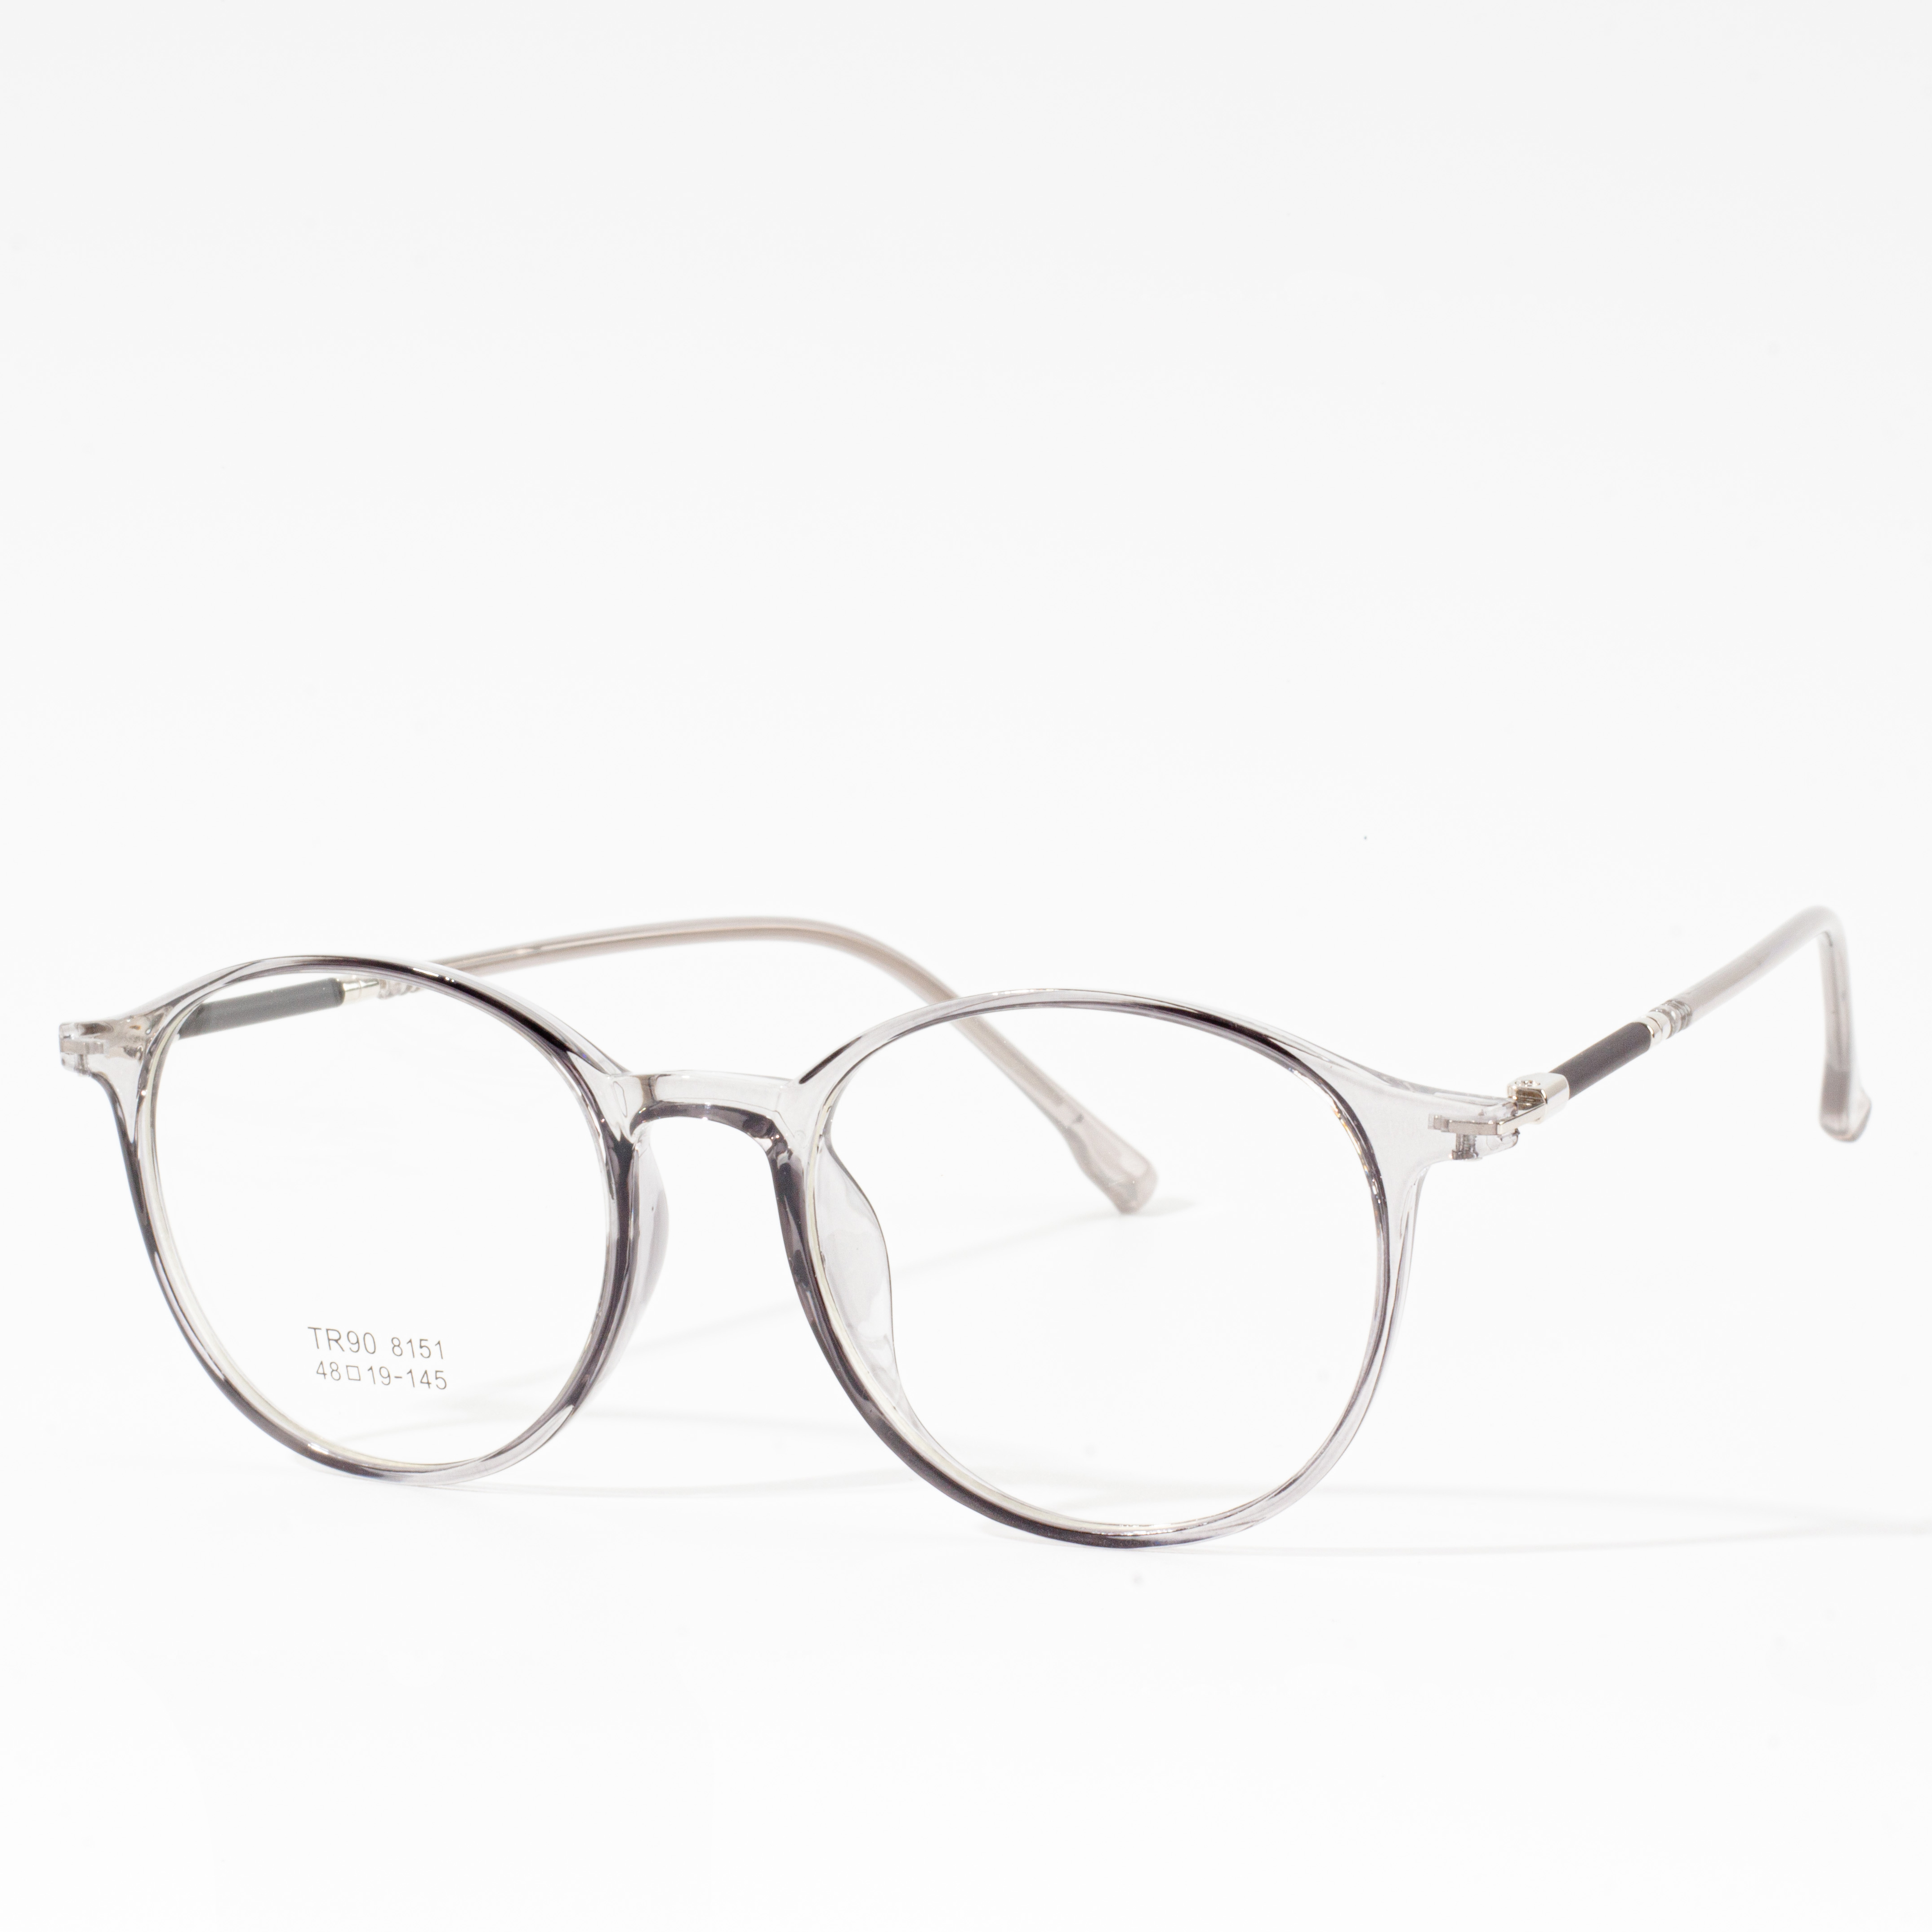 Mens & Women Designer Frames - Eyeglasses.com 广告· https://www.eyeglasses.com/ (888) 896-3885 Shop Designer Frames from Top Global Eyeglass Brands Pou mwatye nan pri Yo Vann an Detay jodi a.